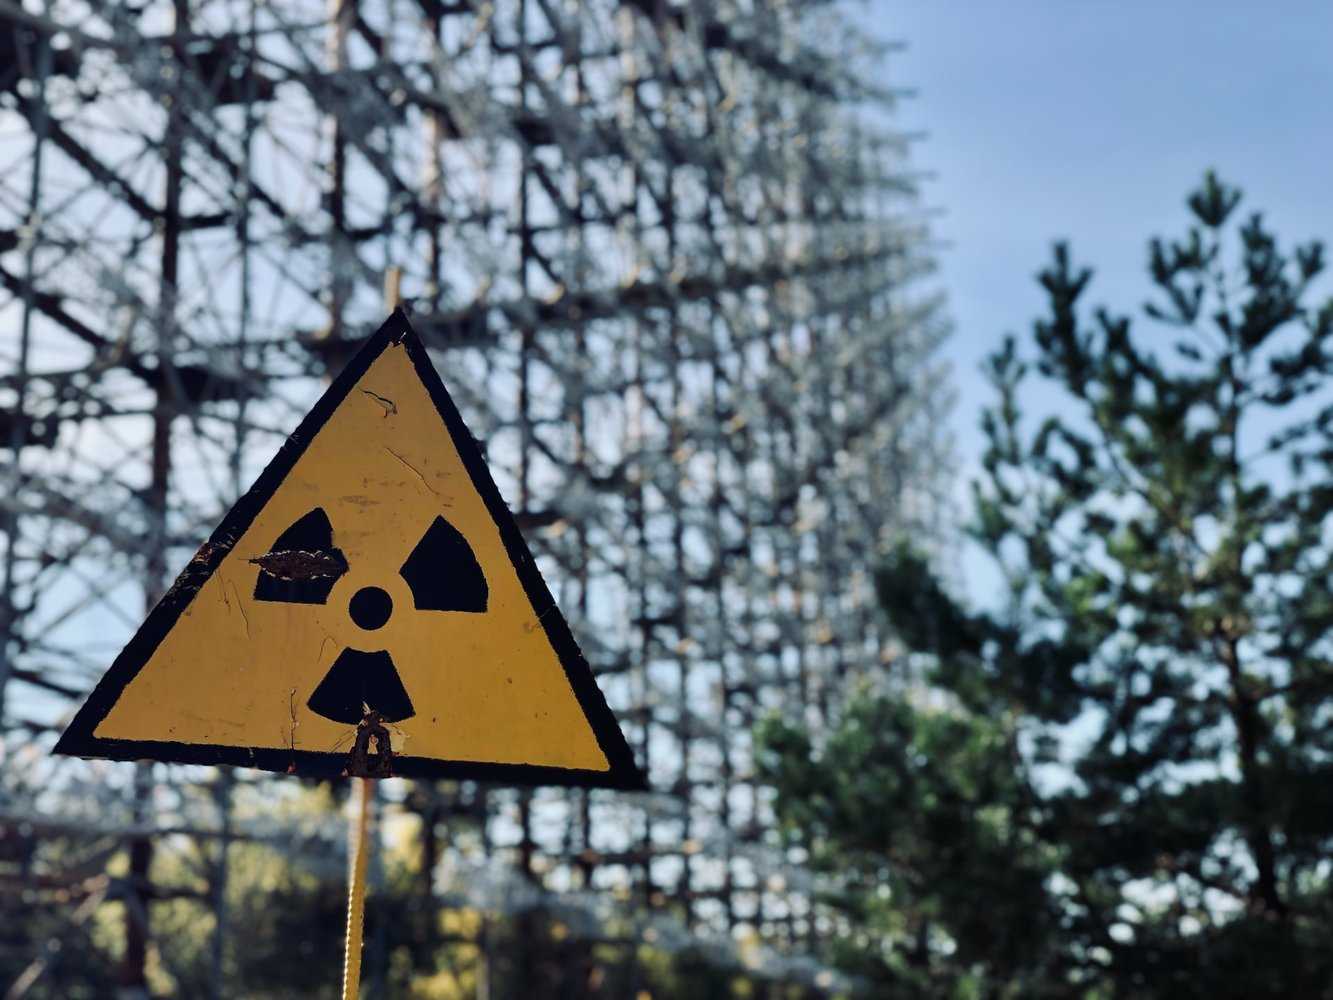 Самые радиоактивные места в чернобыле фото